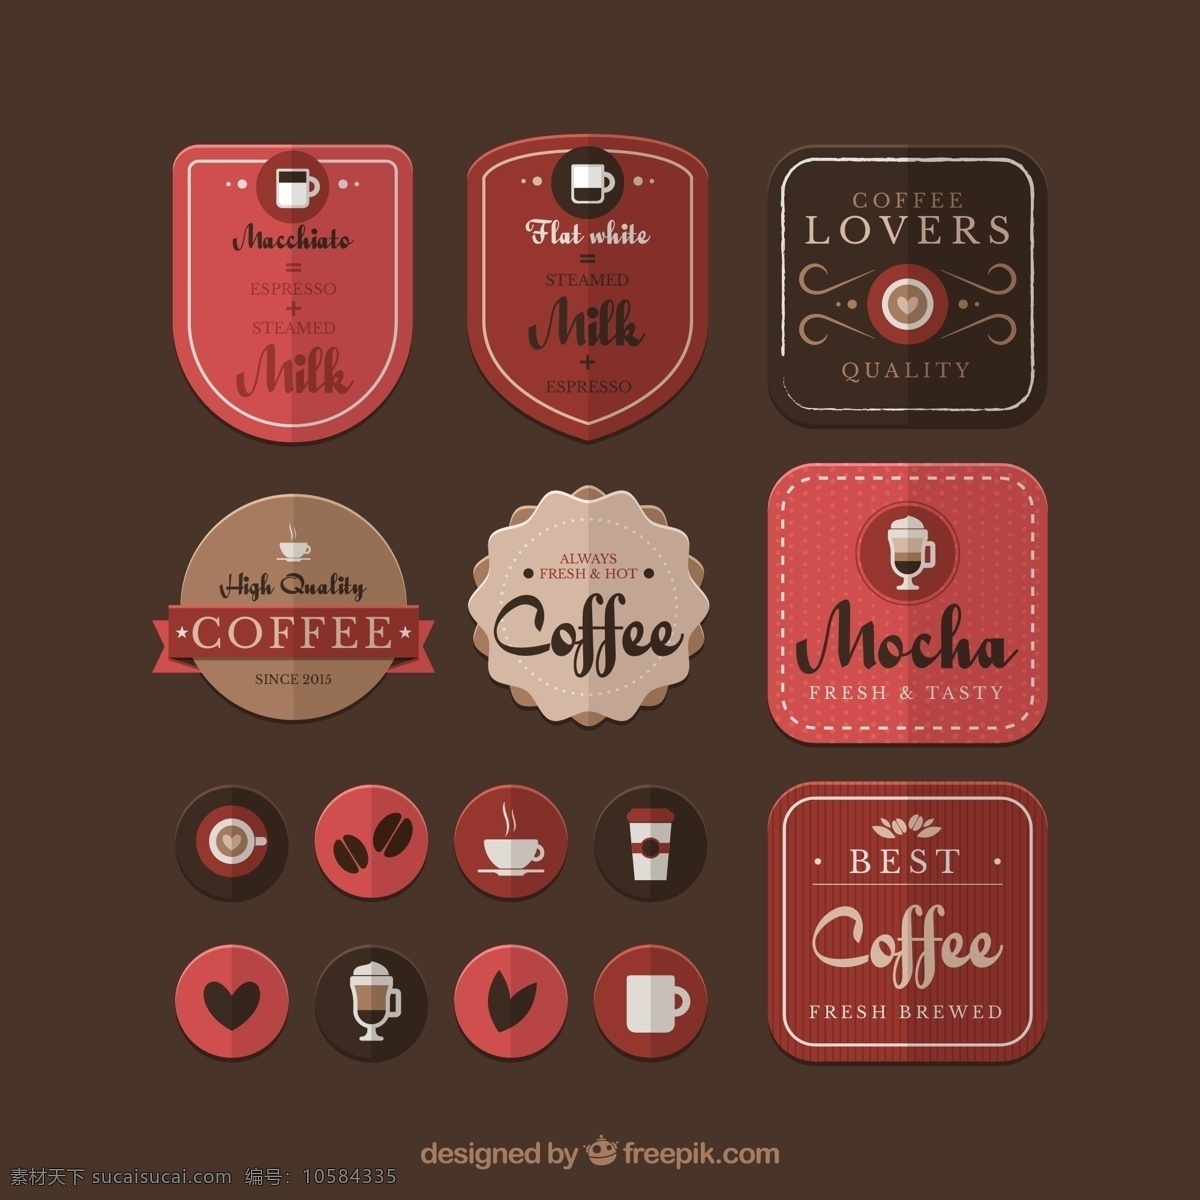 款 质感 咖啡 元素 标签 矢量图 咖啡元素 绿叶 生活百科 矢量咖啡豆 矢量素材 咖啡豆 图标 模板下载 质感图标